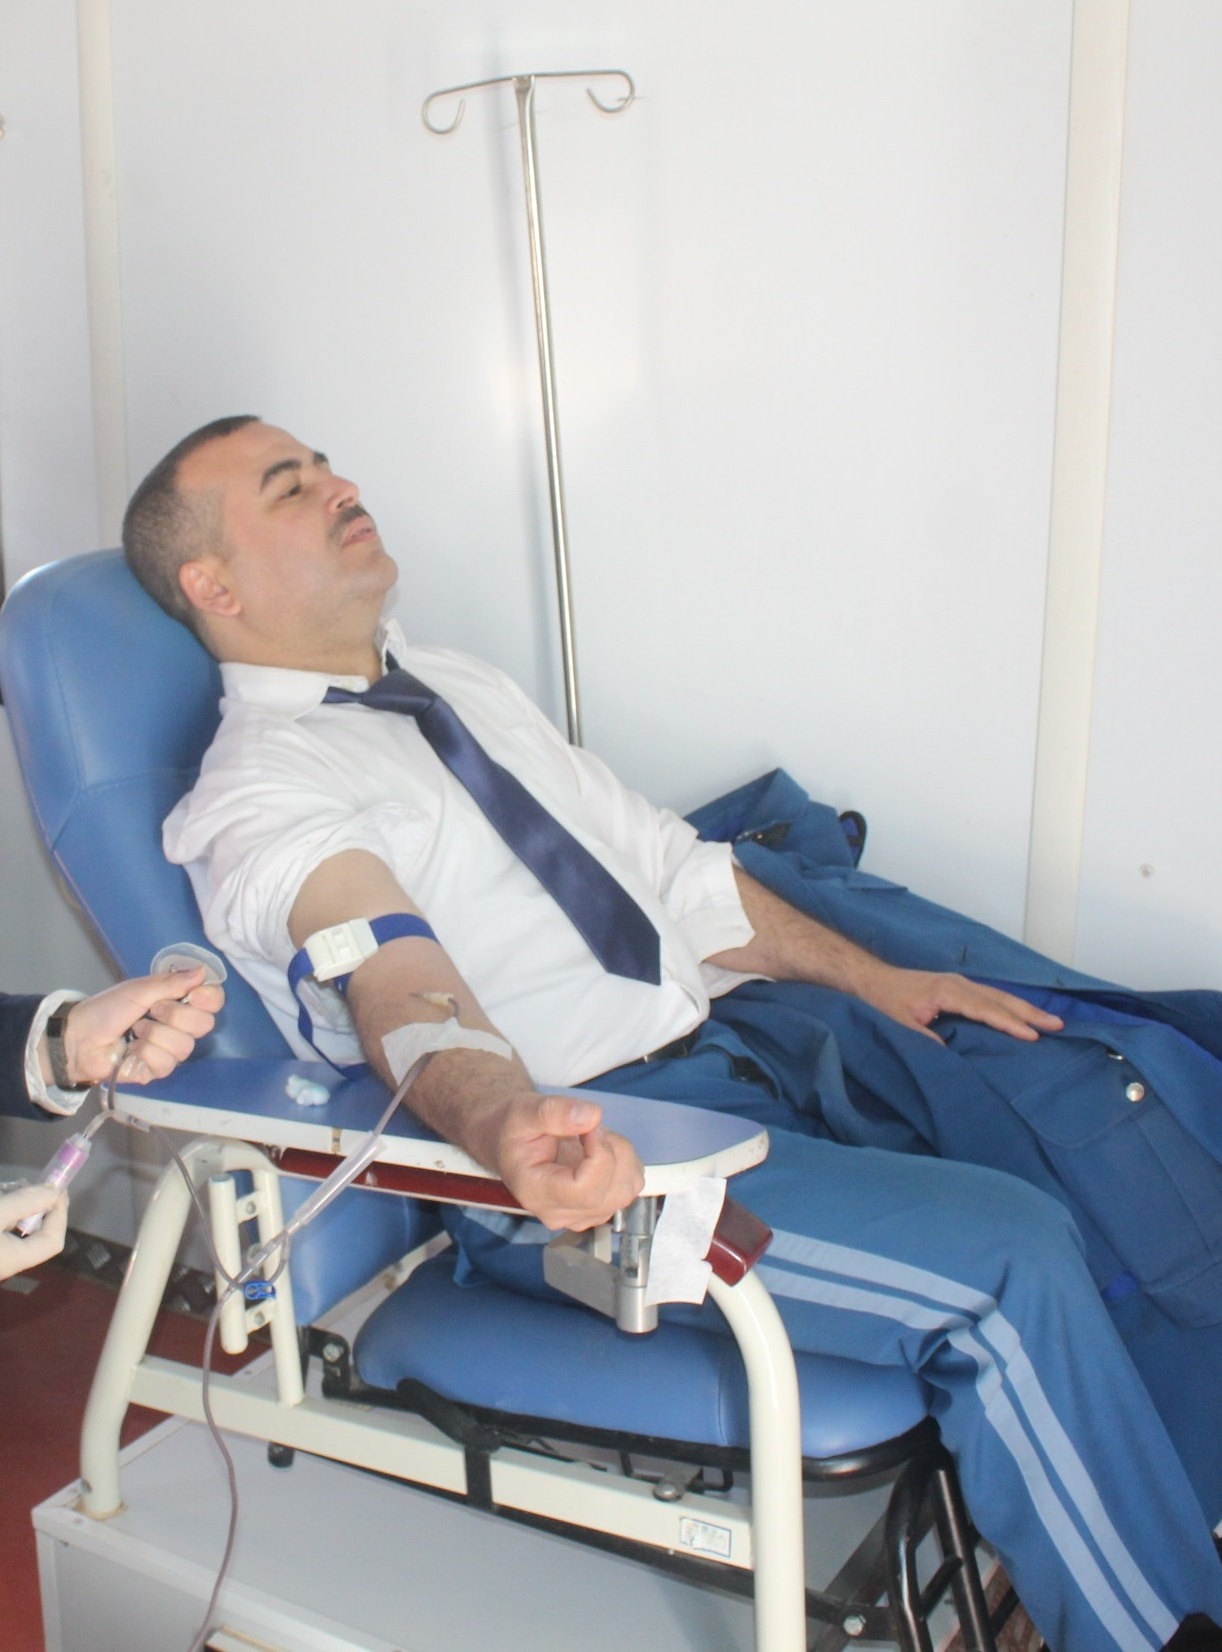 صورة أشرف على انطلاق الحملة خليفة أونيسي: المديرية العامة للأمن الوطني تطلق حملة وطنية للتبرع بالدم